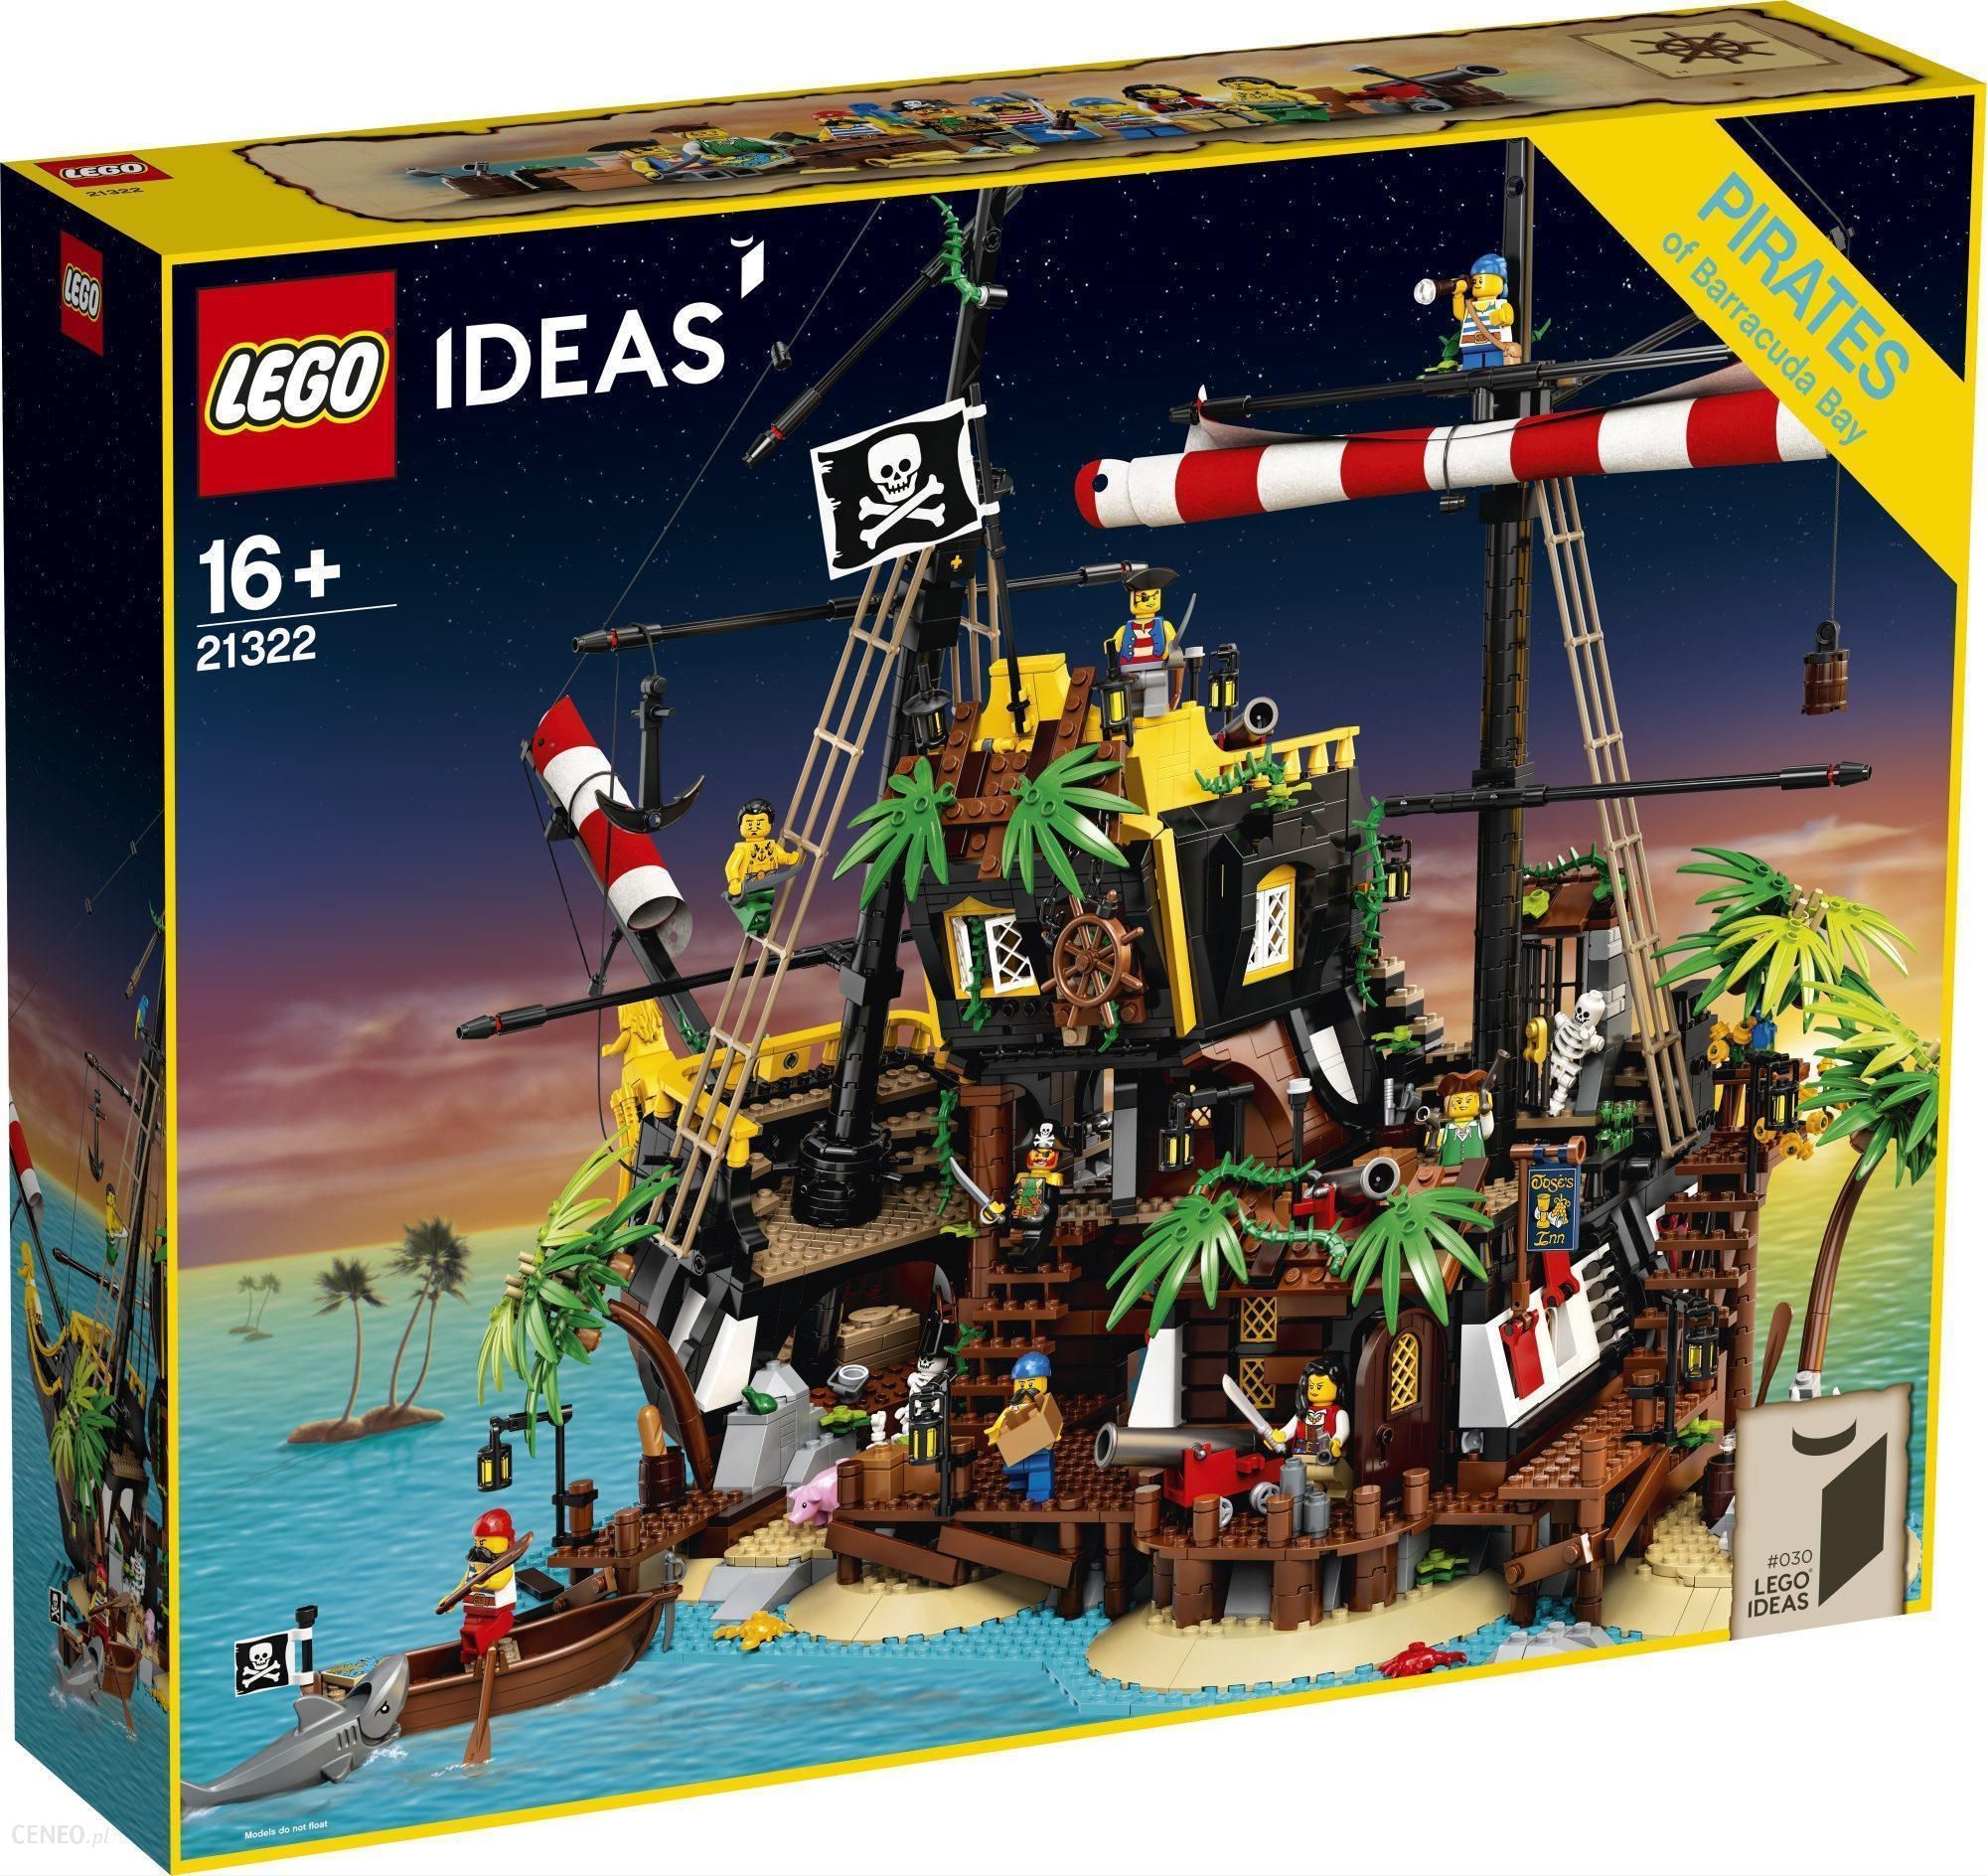 LEGO Ideas 21322 Piraci Zatoki ceny i opinie -